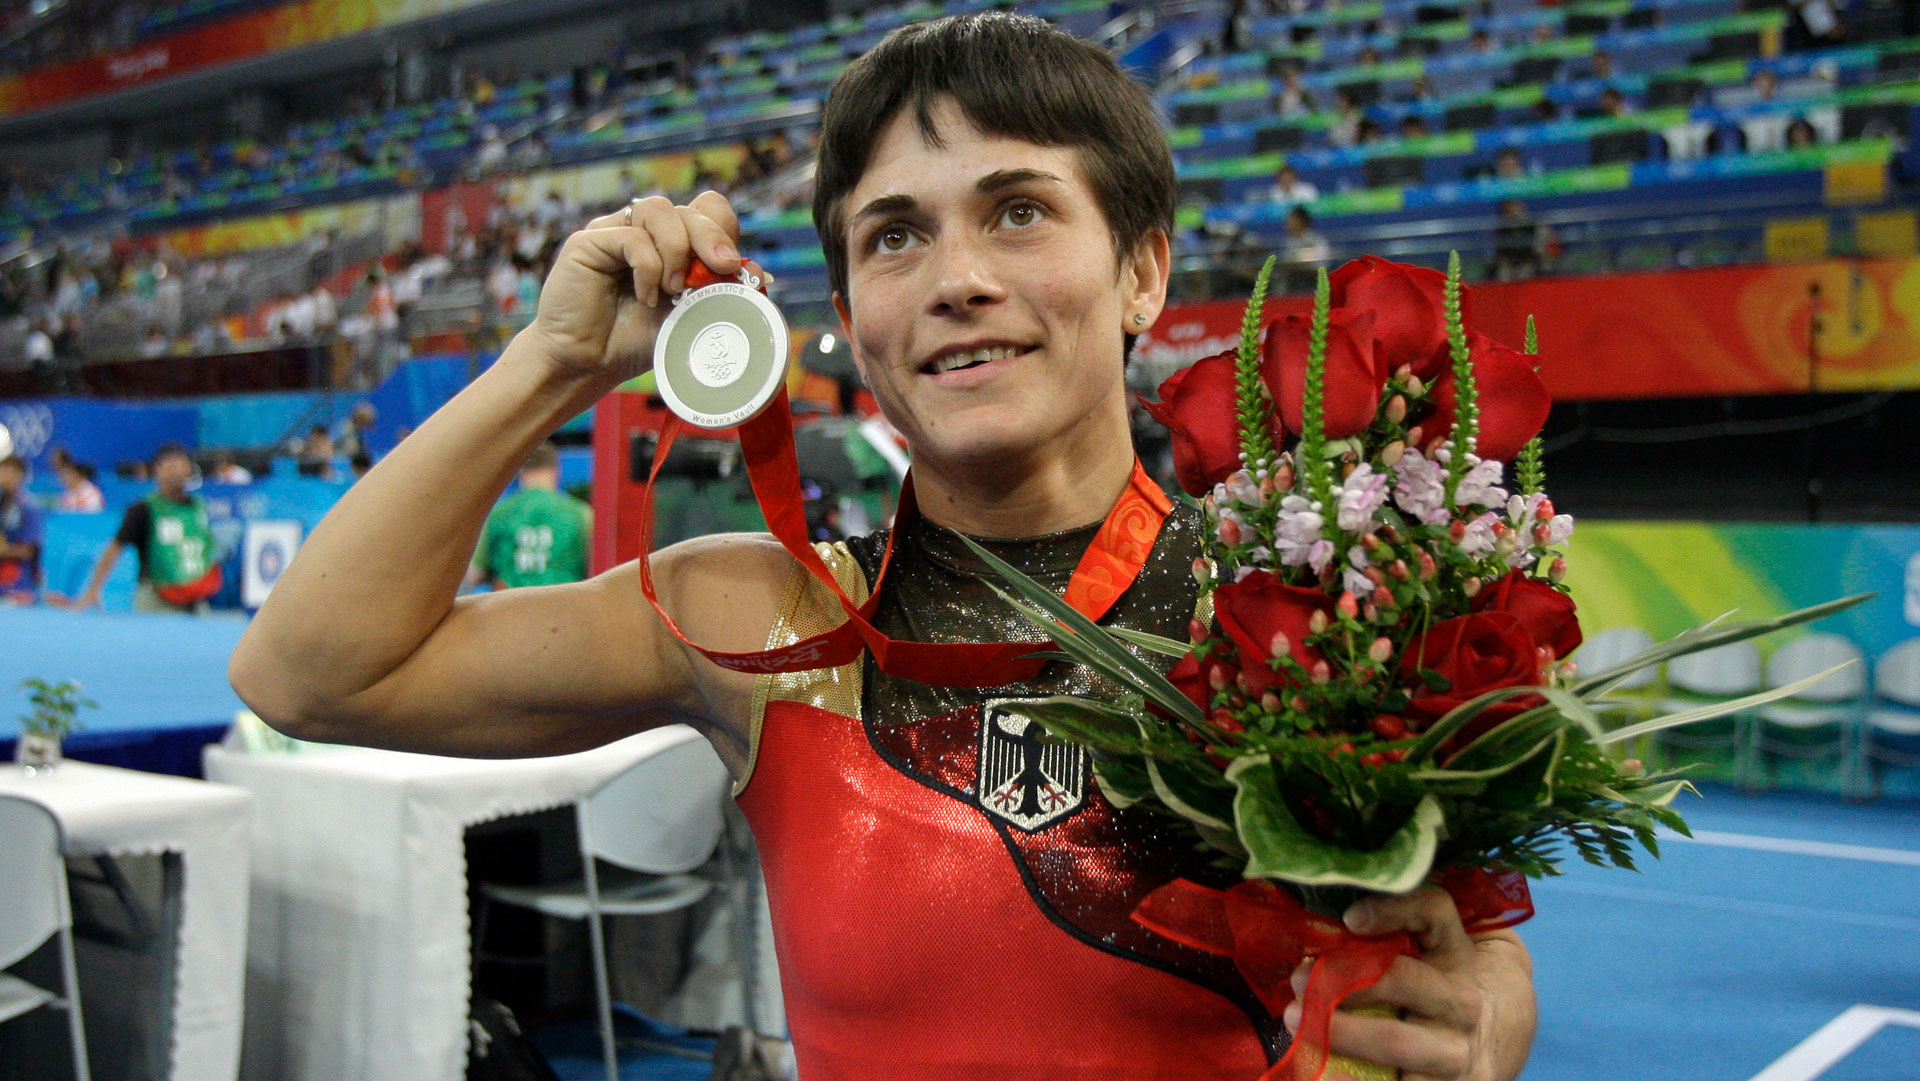 Silbermedaille 2008 Sprung Olympische Spiele Peking | Bildquelle: Picture Alliance